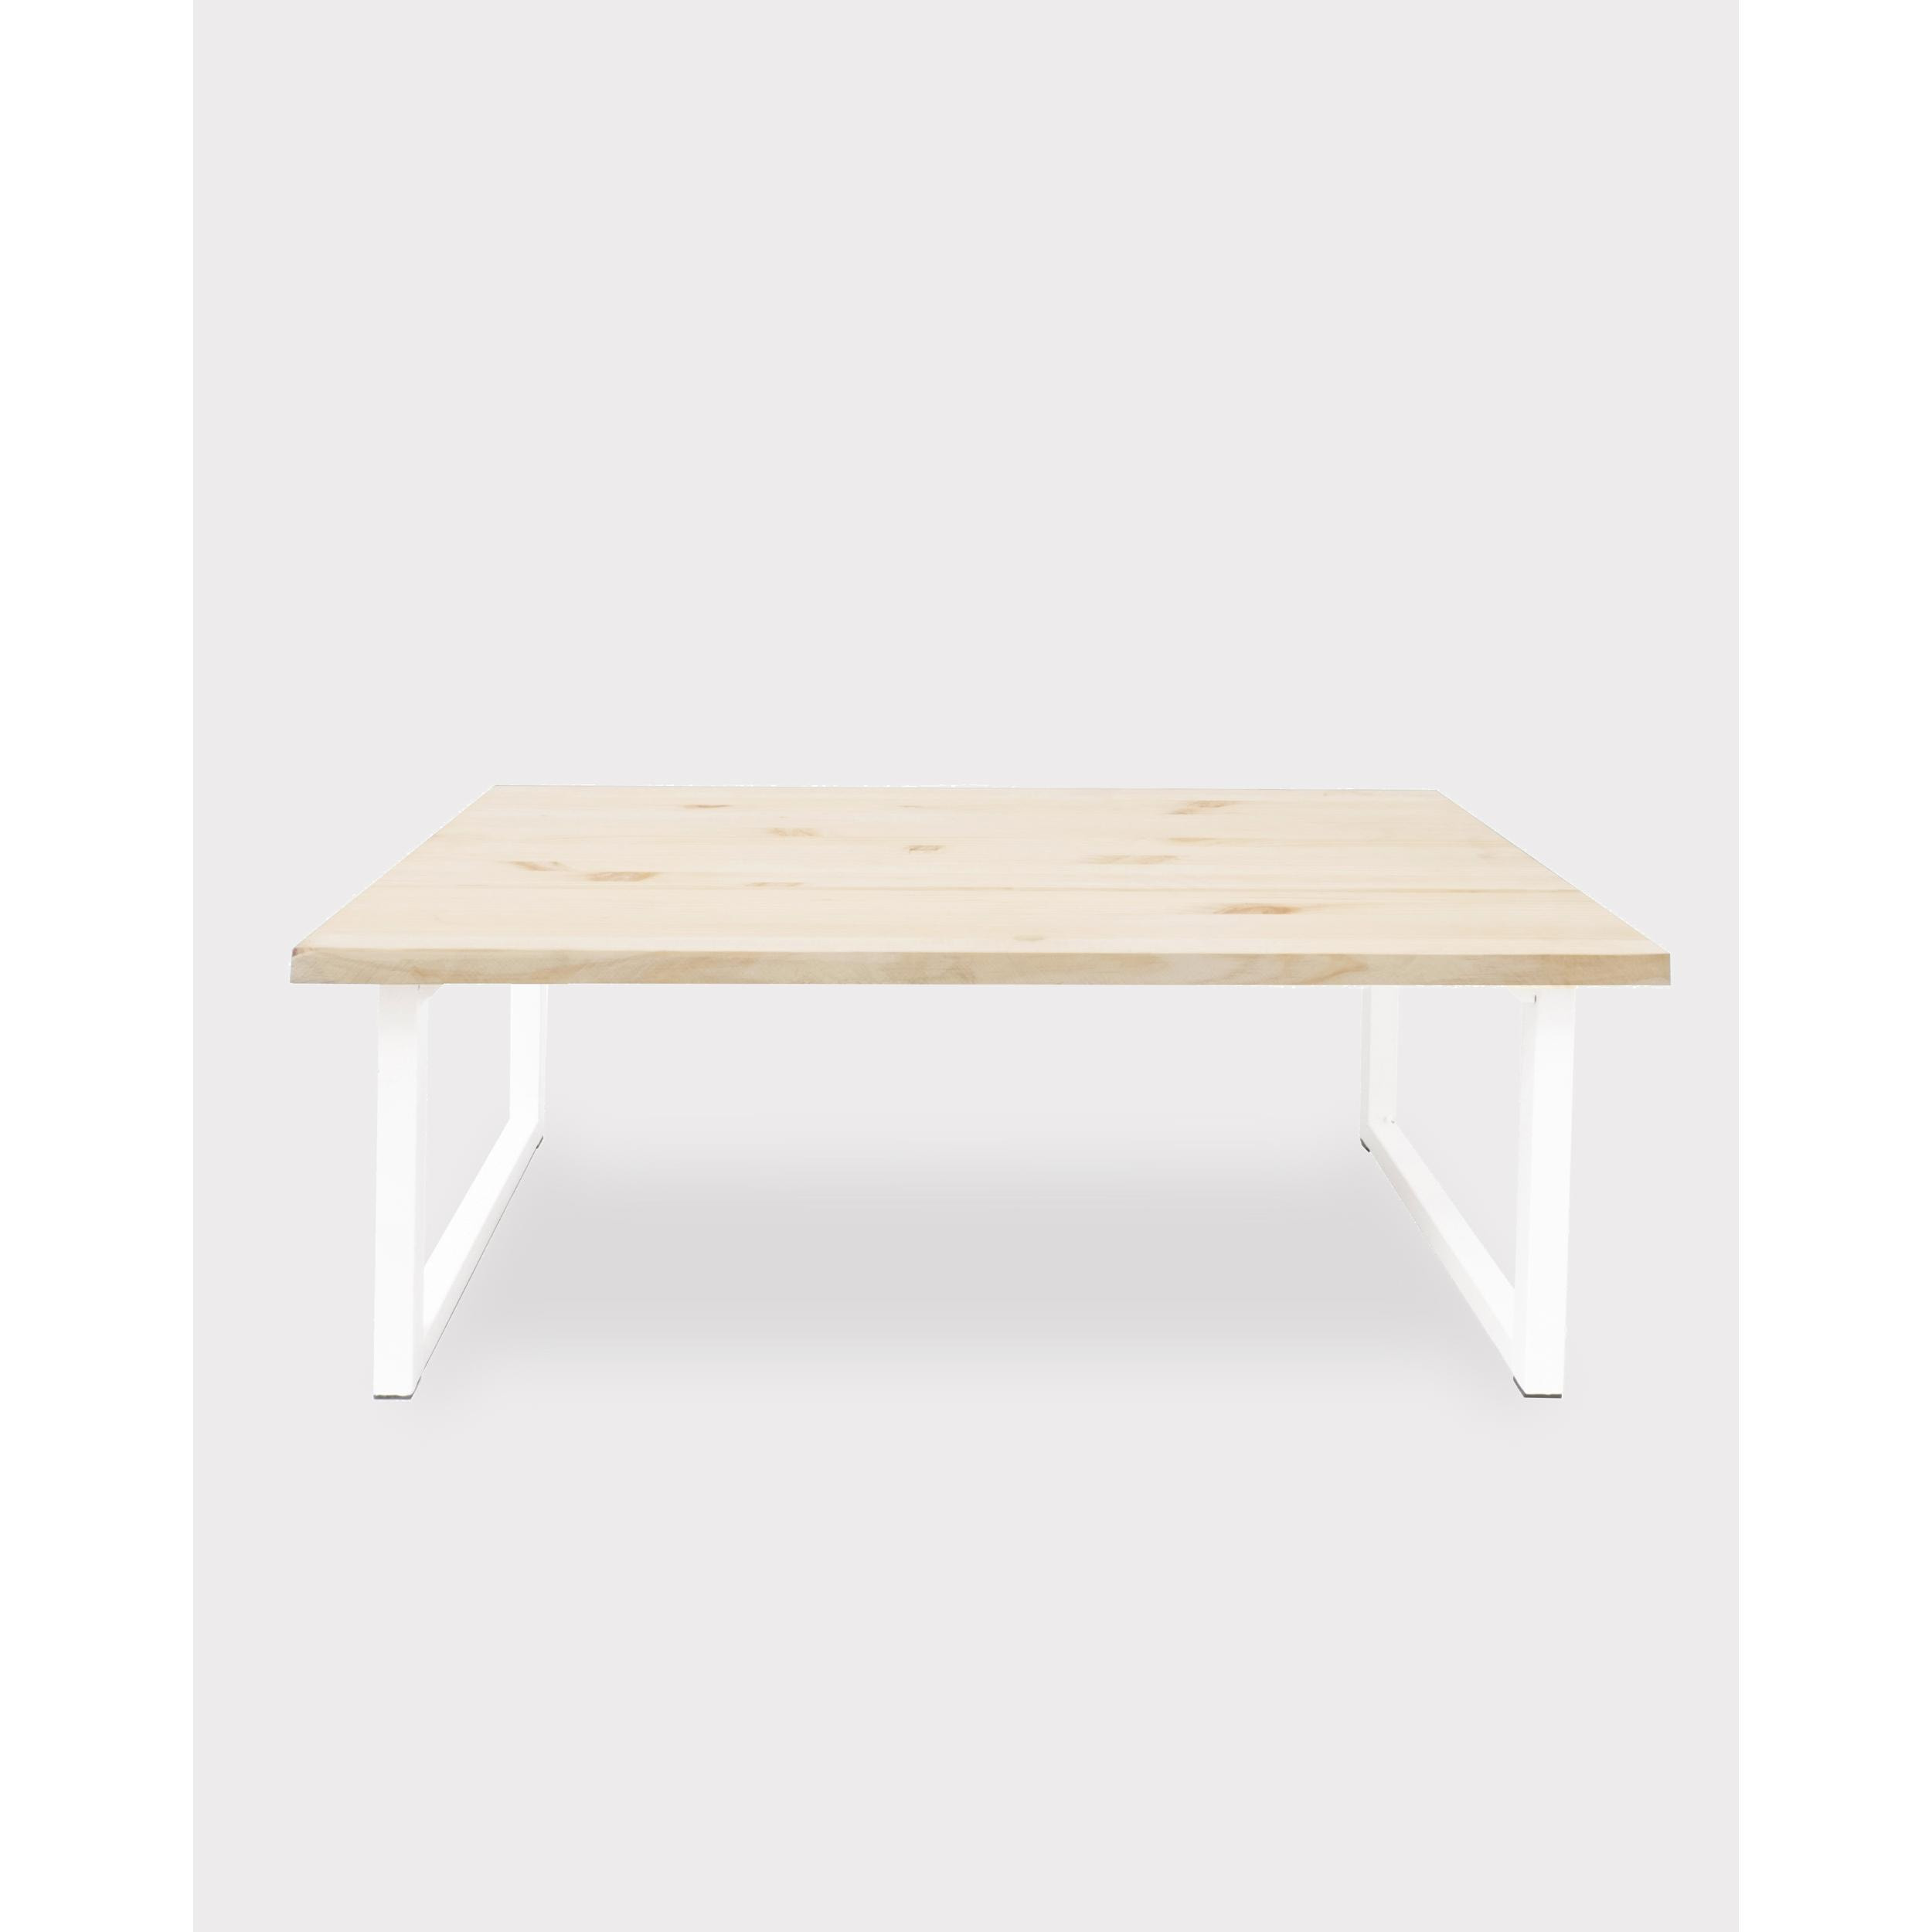 Table basse en bois massif, ton naturel, avec pieds en fer blanc, 40x100cm Hauteur: 40 Longueur: 100 Largeur: 60